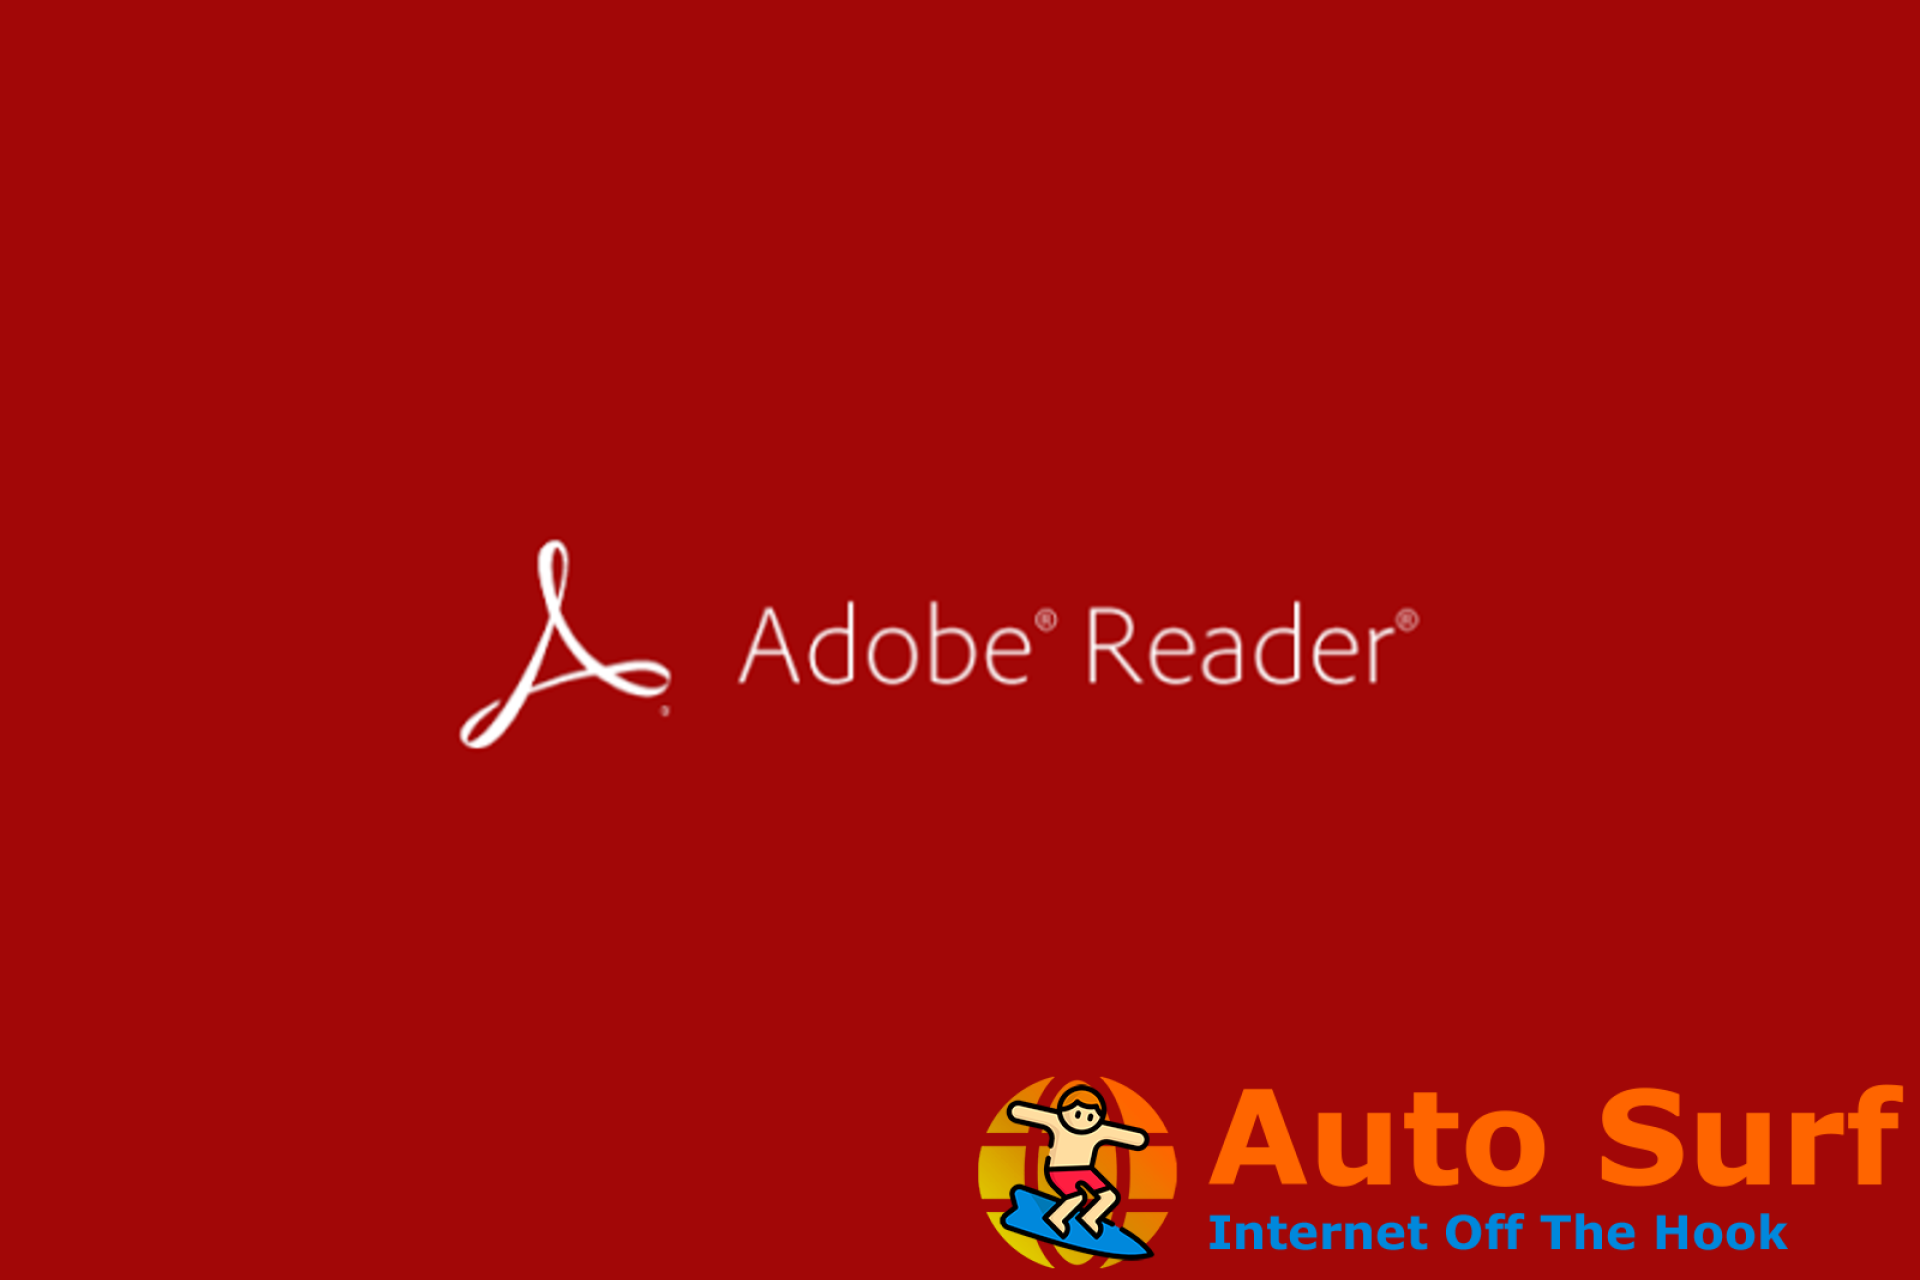 La impresora no se muestra en Adobe Reader: 4 soluciones para solucionar este problema